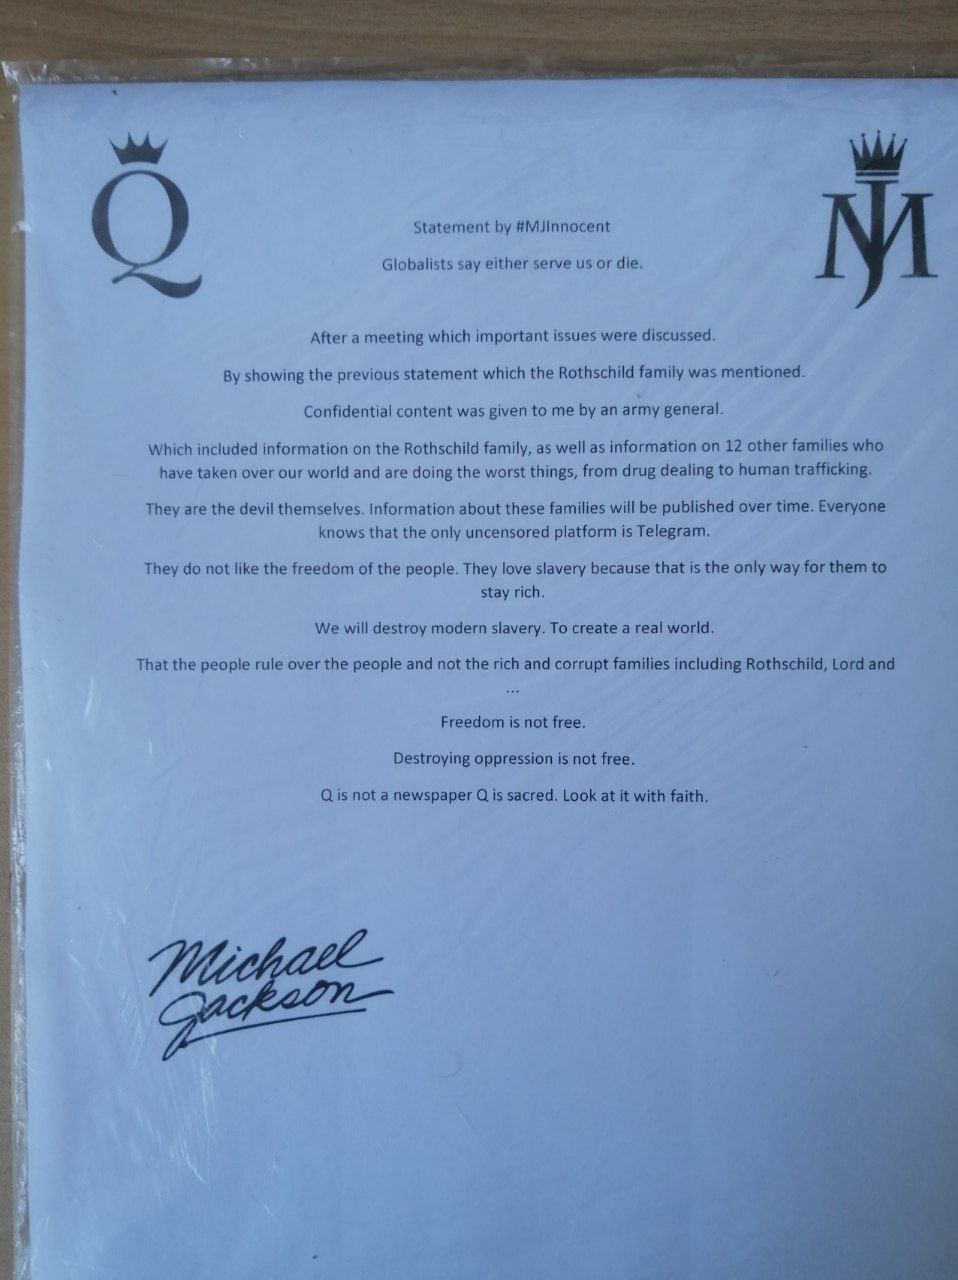 En su segundo comunicado, Michael Jackson revela que la familia Rothschild le amenazó de muerte y los militares de Q vinieron en su ayuda